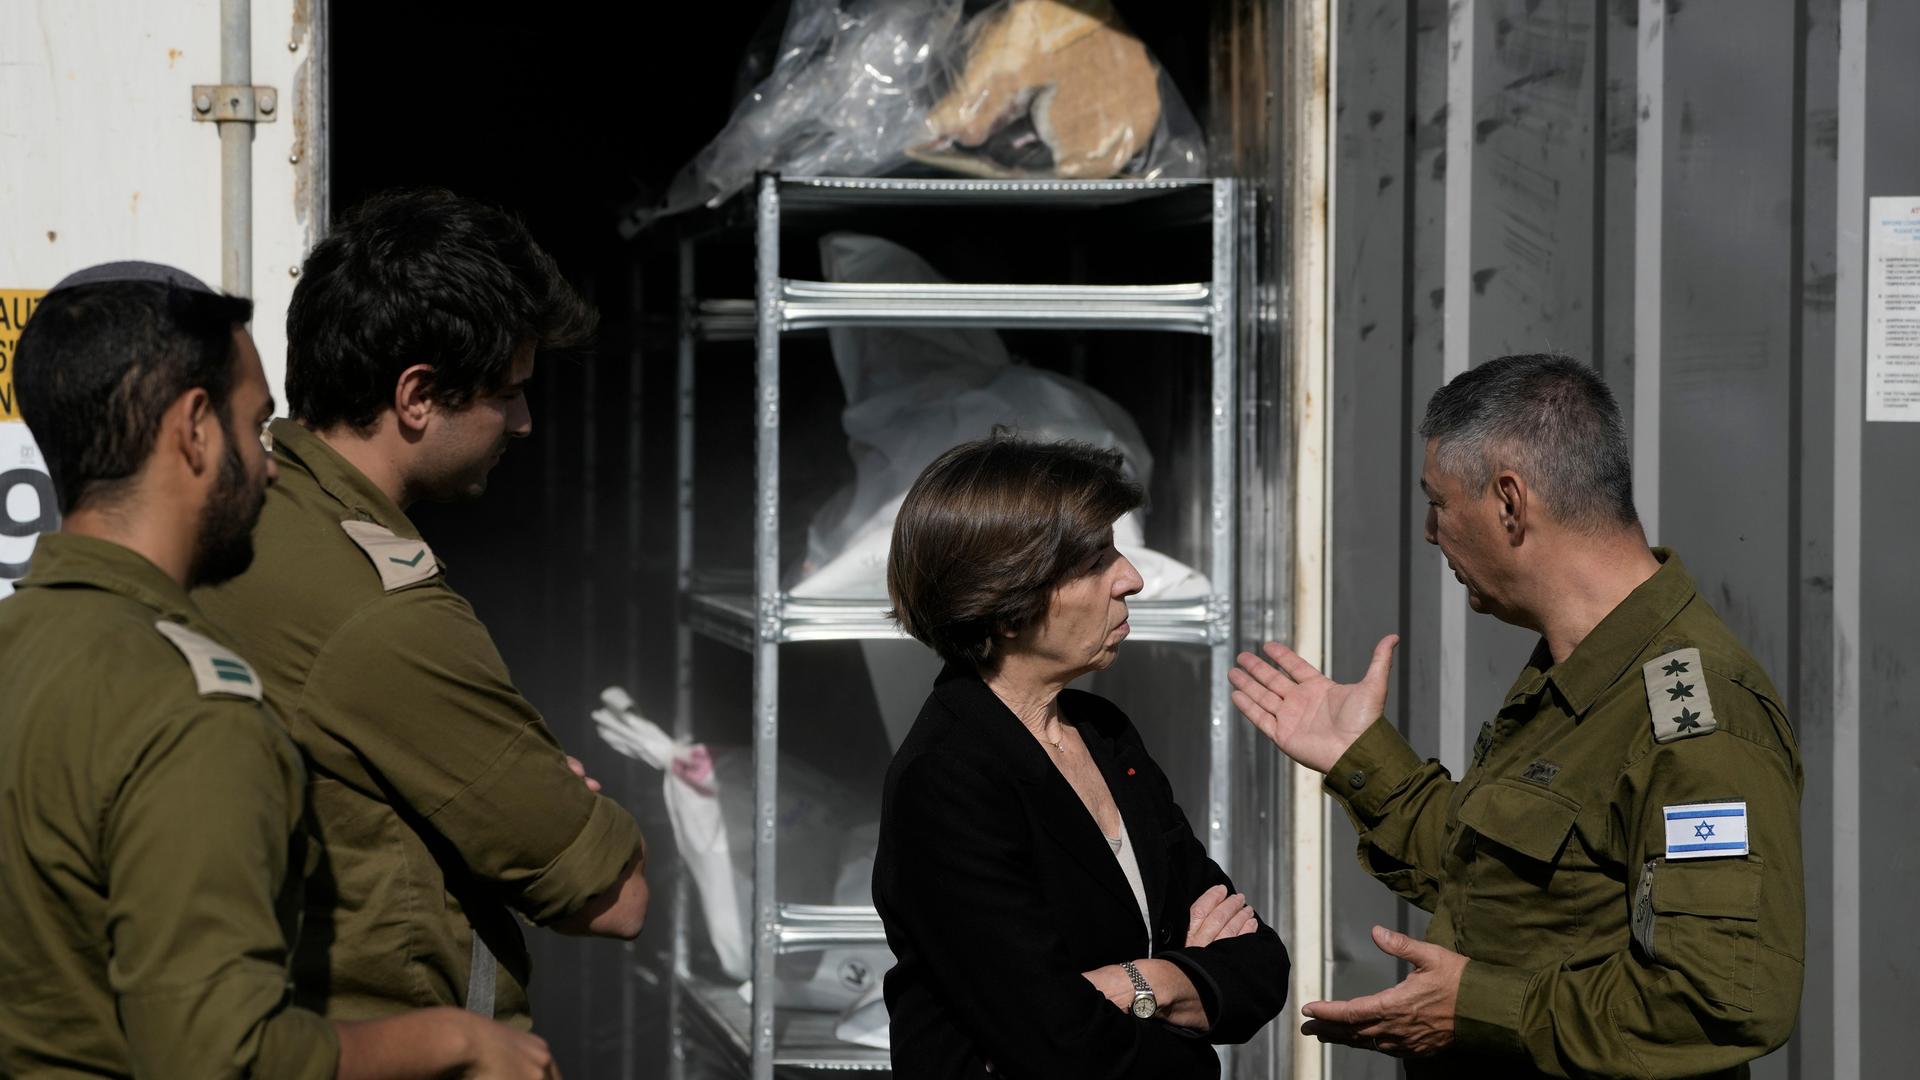 Die französische Außenministerin Catherine Colonna unterhält sich mit einem Offizier. Hinter ihr sind Container zu sehen, in denen die Leichen von Opfern des Terrorangriffs der Hamas aufbewahrt werden.